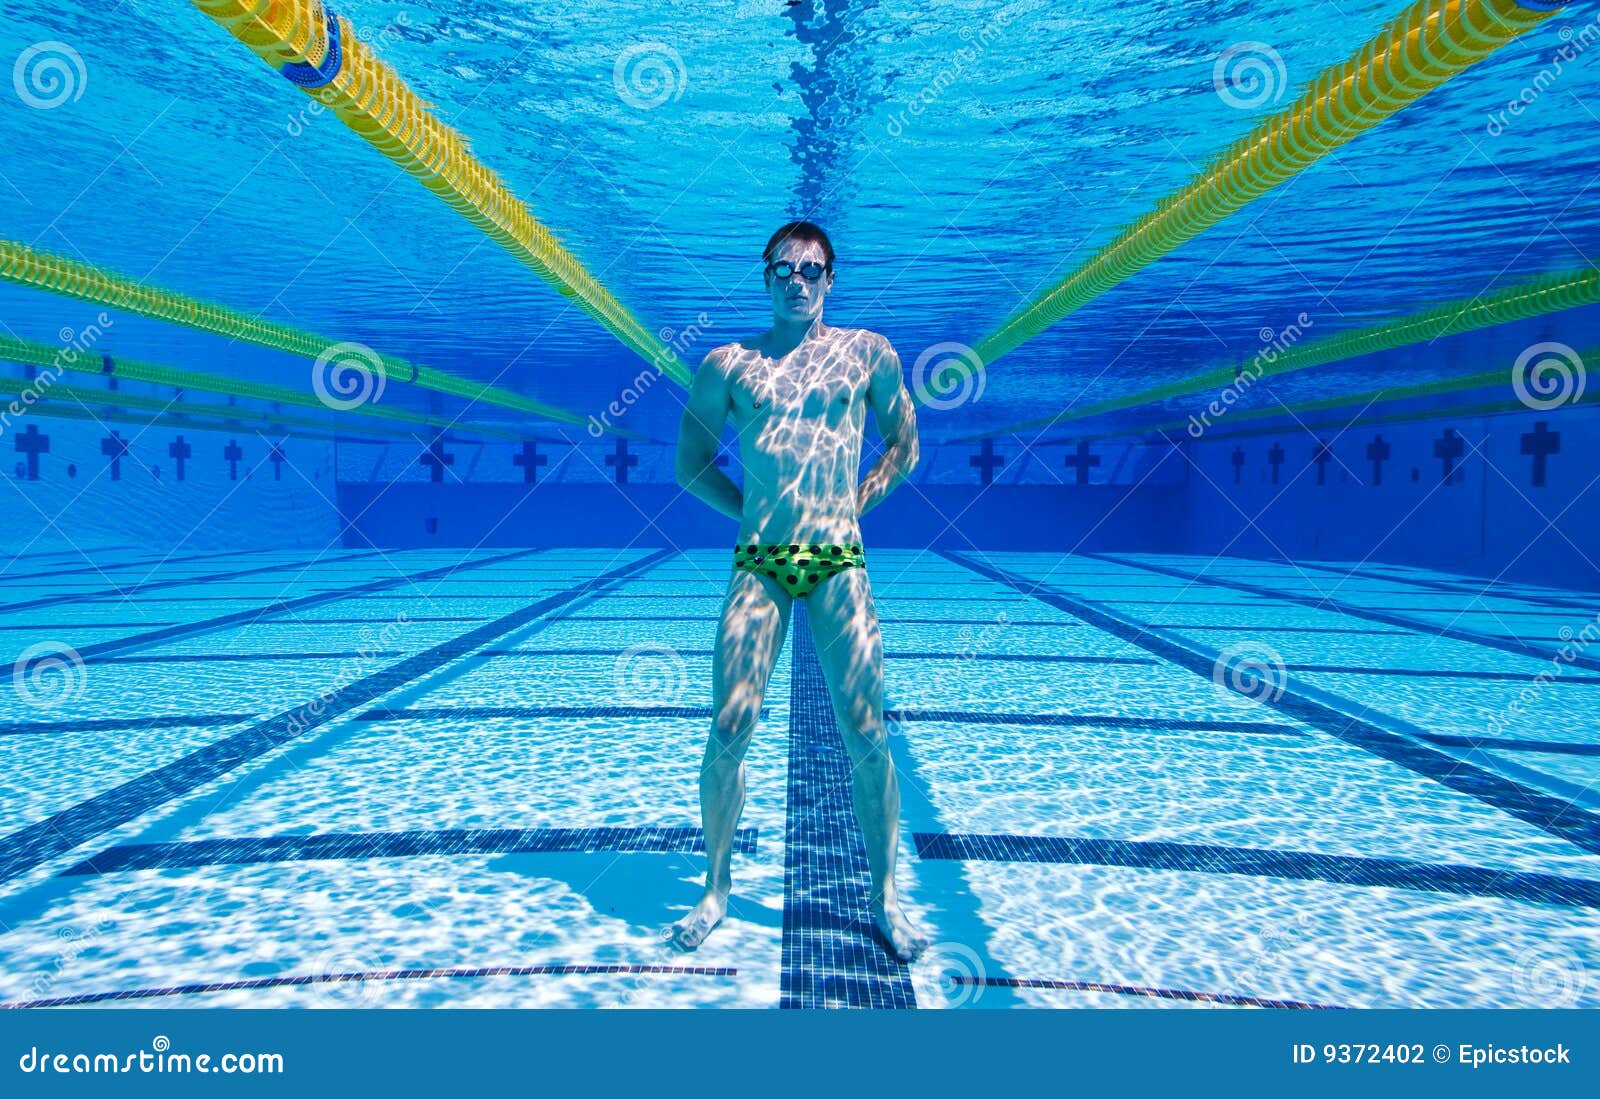 Лежать на дне бассейна. Дно бассейна. На дне бассейна. Человек на дне бассейна. Фото дна бассейна.